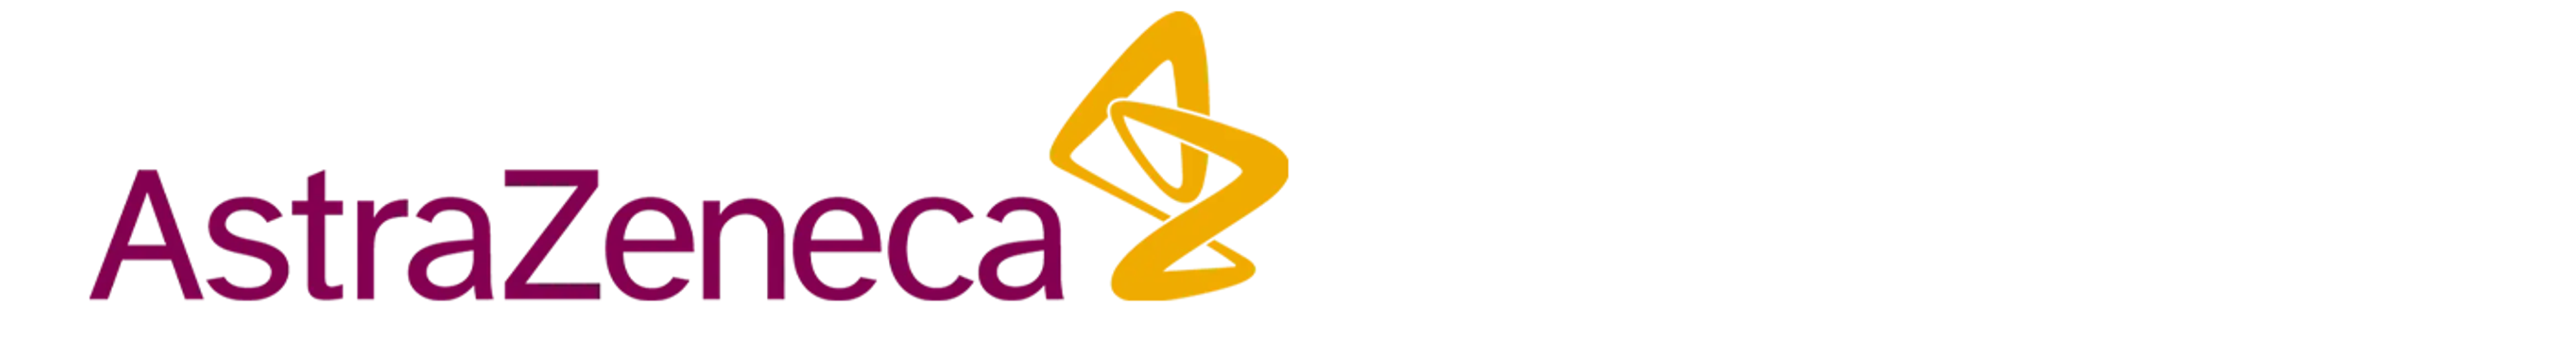 AZ logo